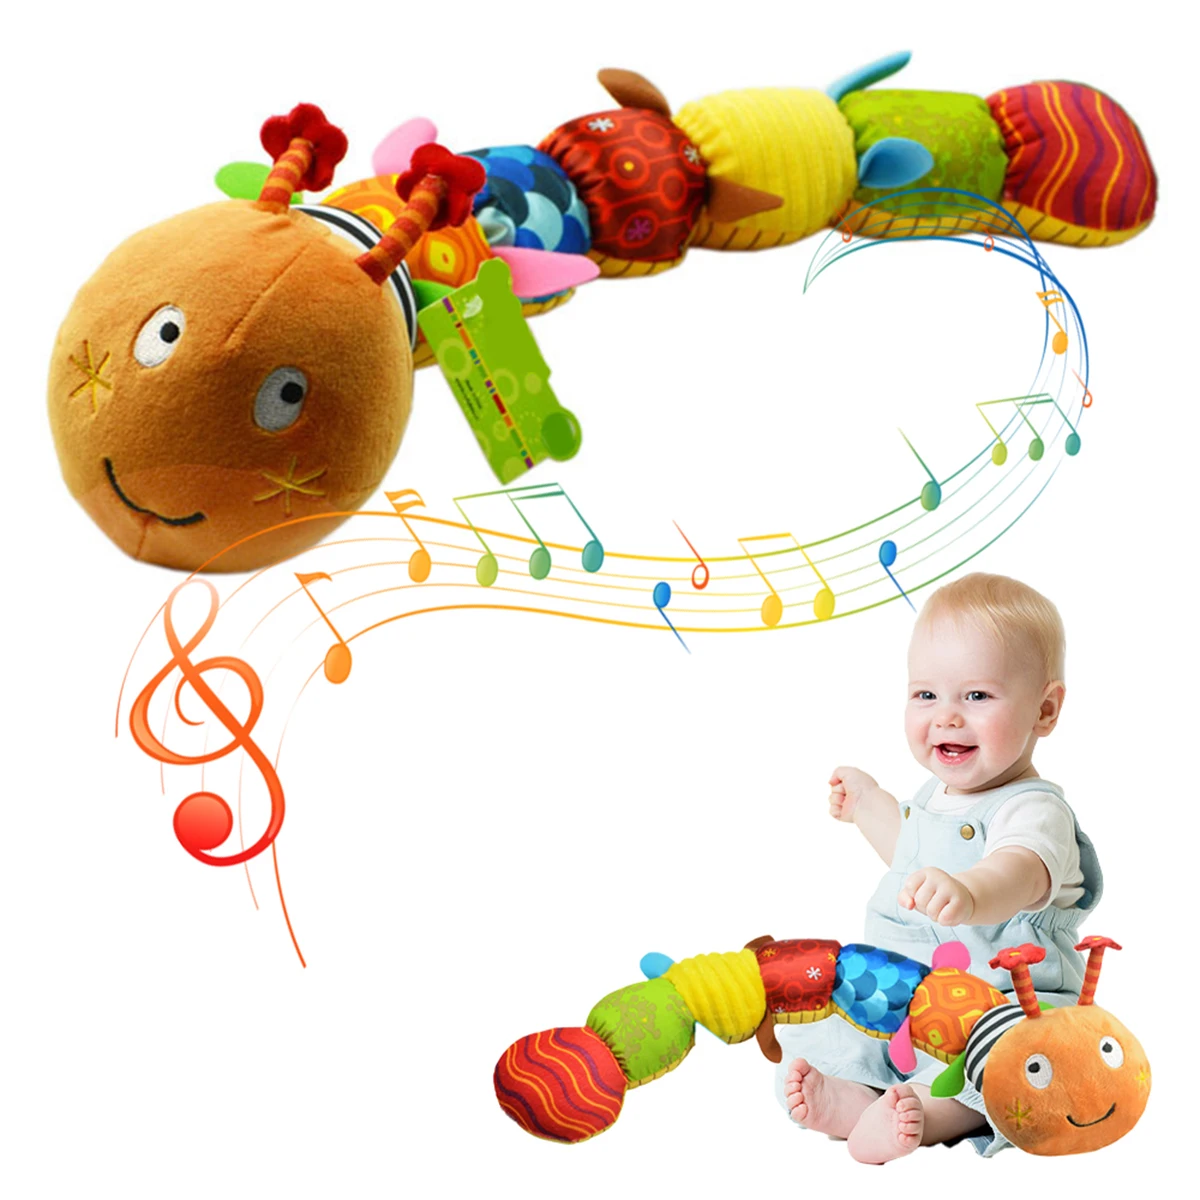 

Музыкальная мягкая гусеница, игрушка-погремушка, развивающая гусеница для раннего развития, плюшевая игрушка, разноцветная мультяшная гус...